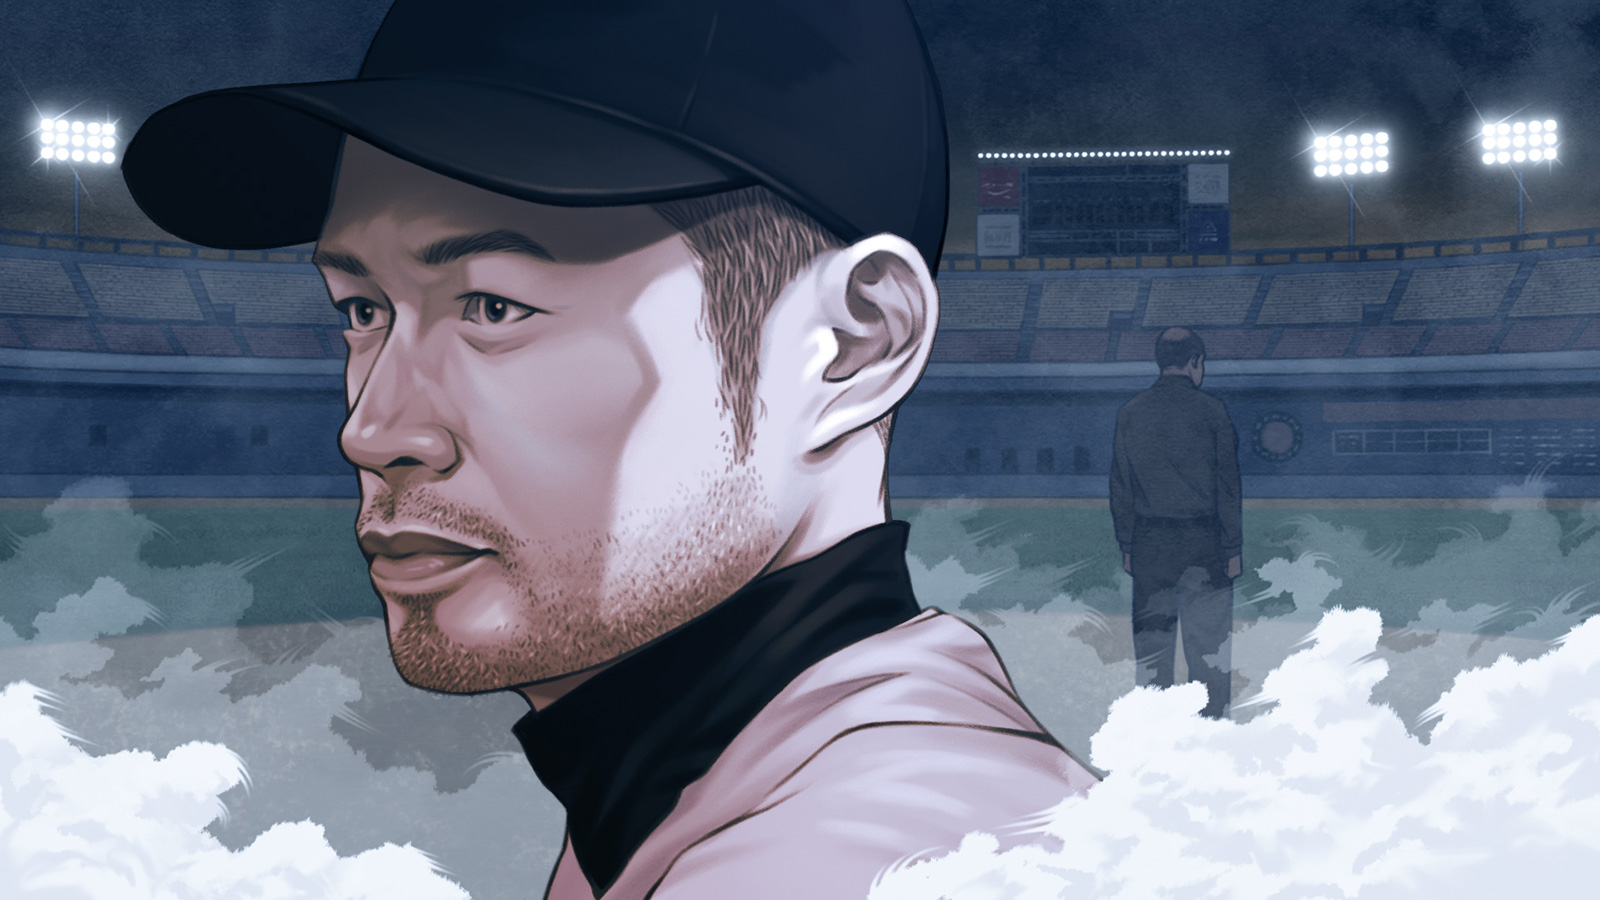 Ichiro Suzuki's return to the Seattle Mariners won't resolve his